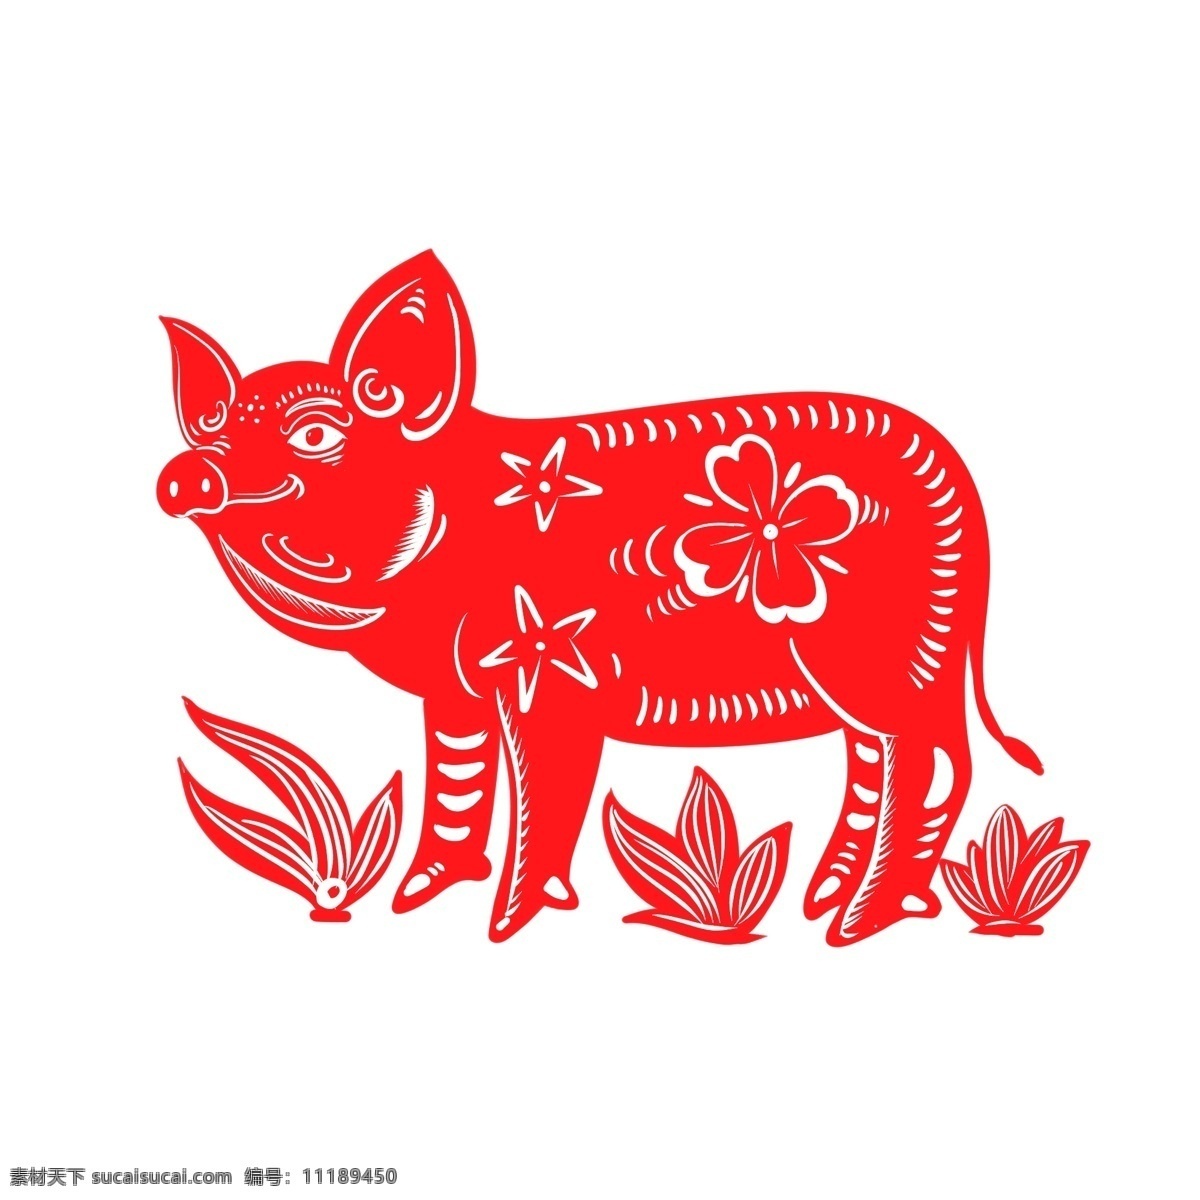 2019 春节 猪年 剪纸 生肖 猪 红色 喜庆 原创 商用 中国风 传统节日 2019年